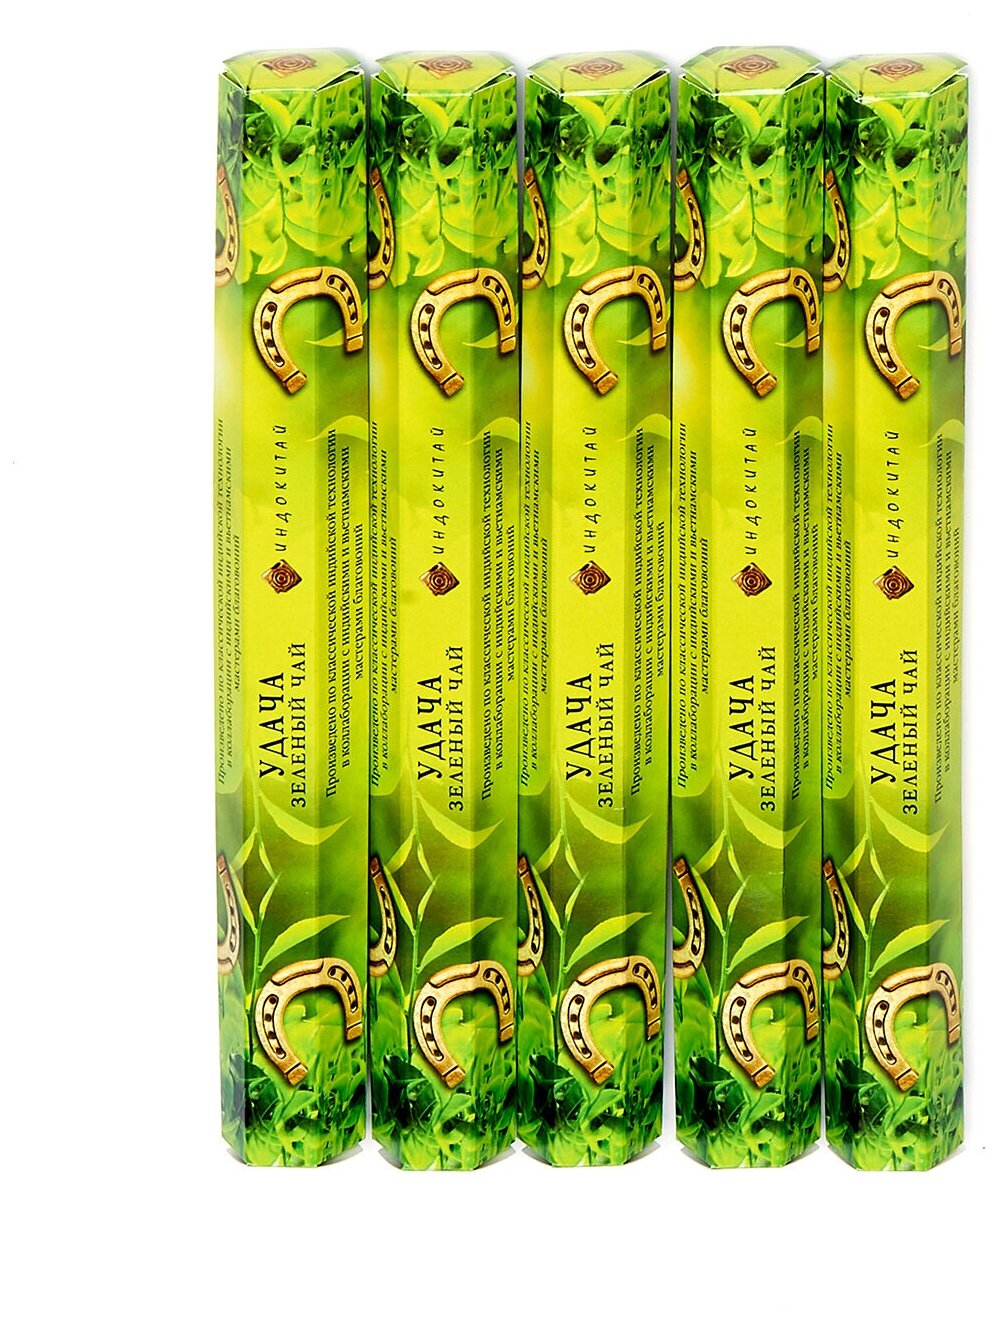 Аромапалочки-шестигранники удача с ароматом зеленый ЧАЙ, набор из 5 упаковок по20шт в каждой, всего 100штук